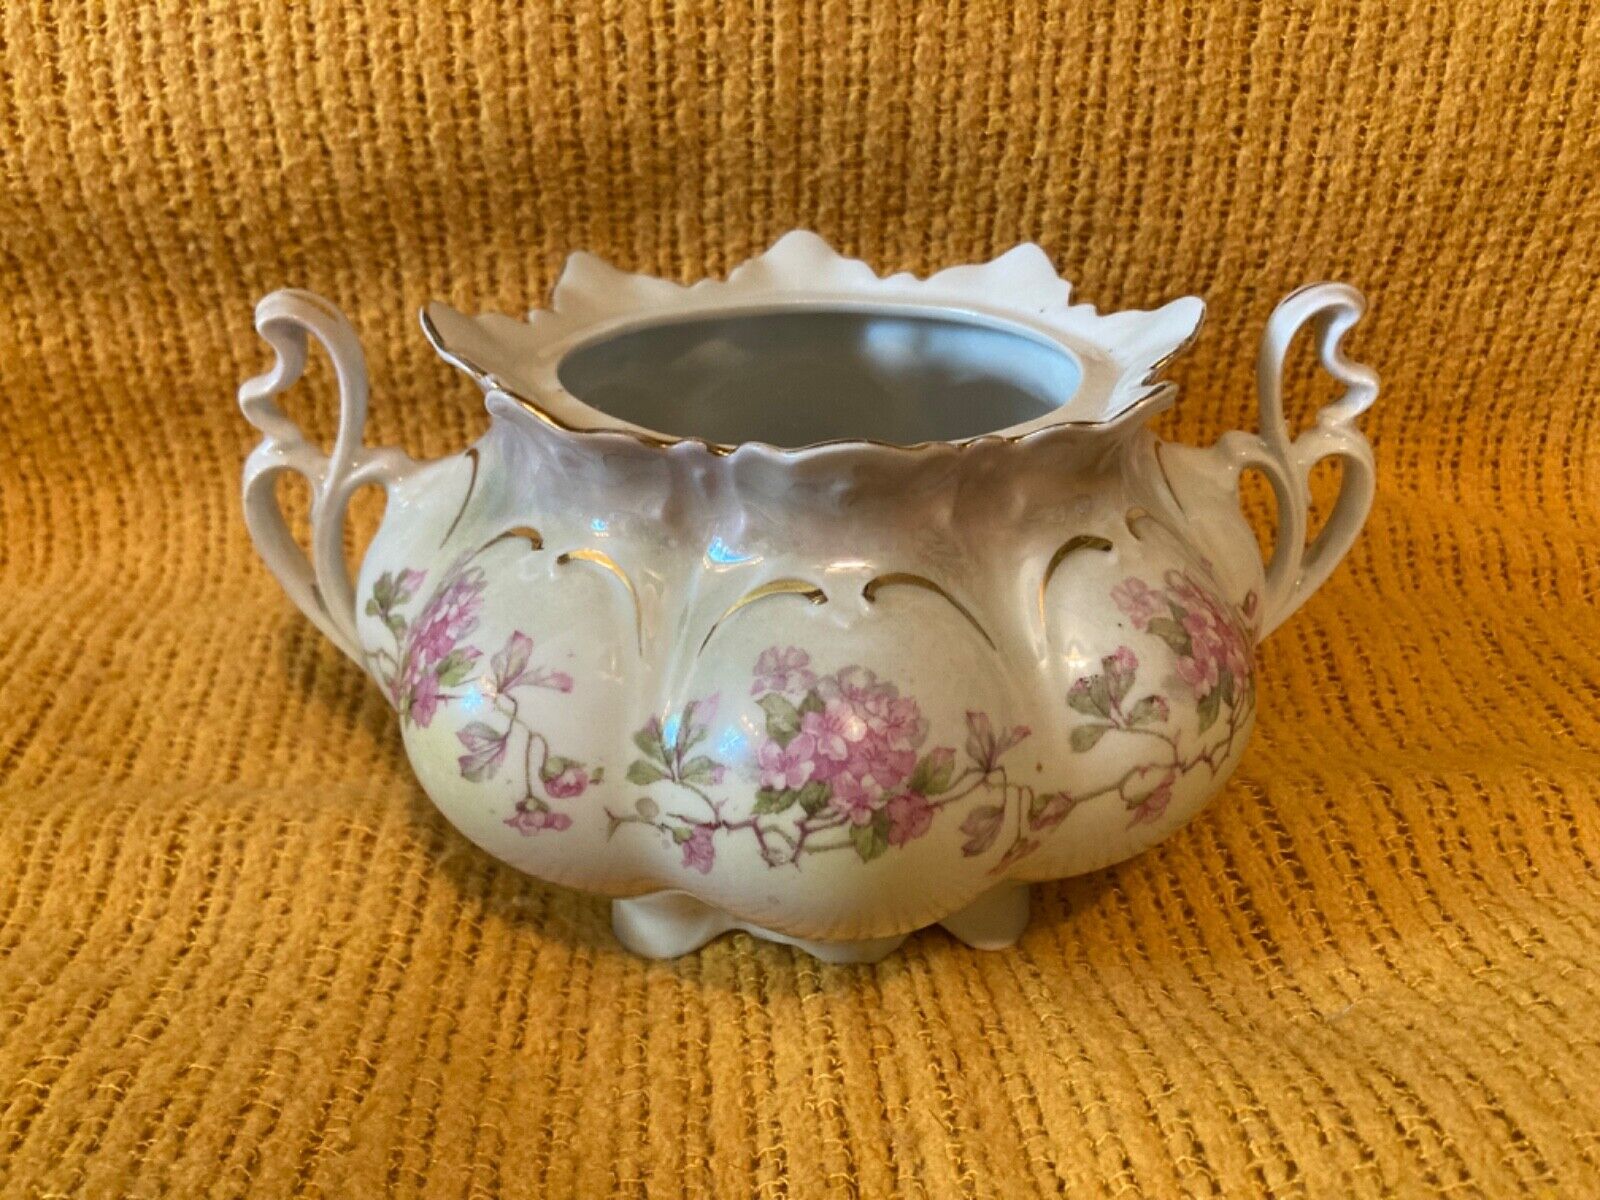 M. Z. Austria Antique Sugar Bowl, Porcelain, 1800s, Victorian, Hand-Painted